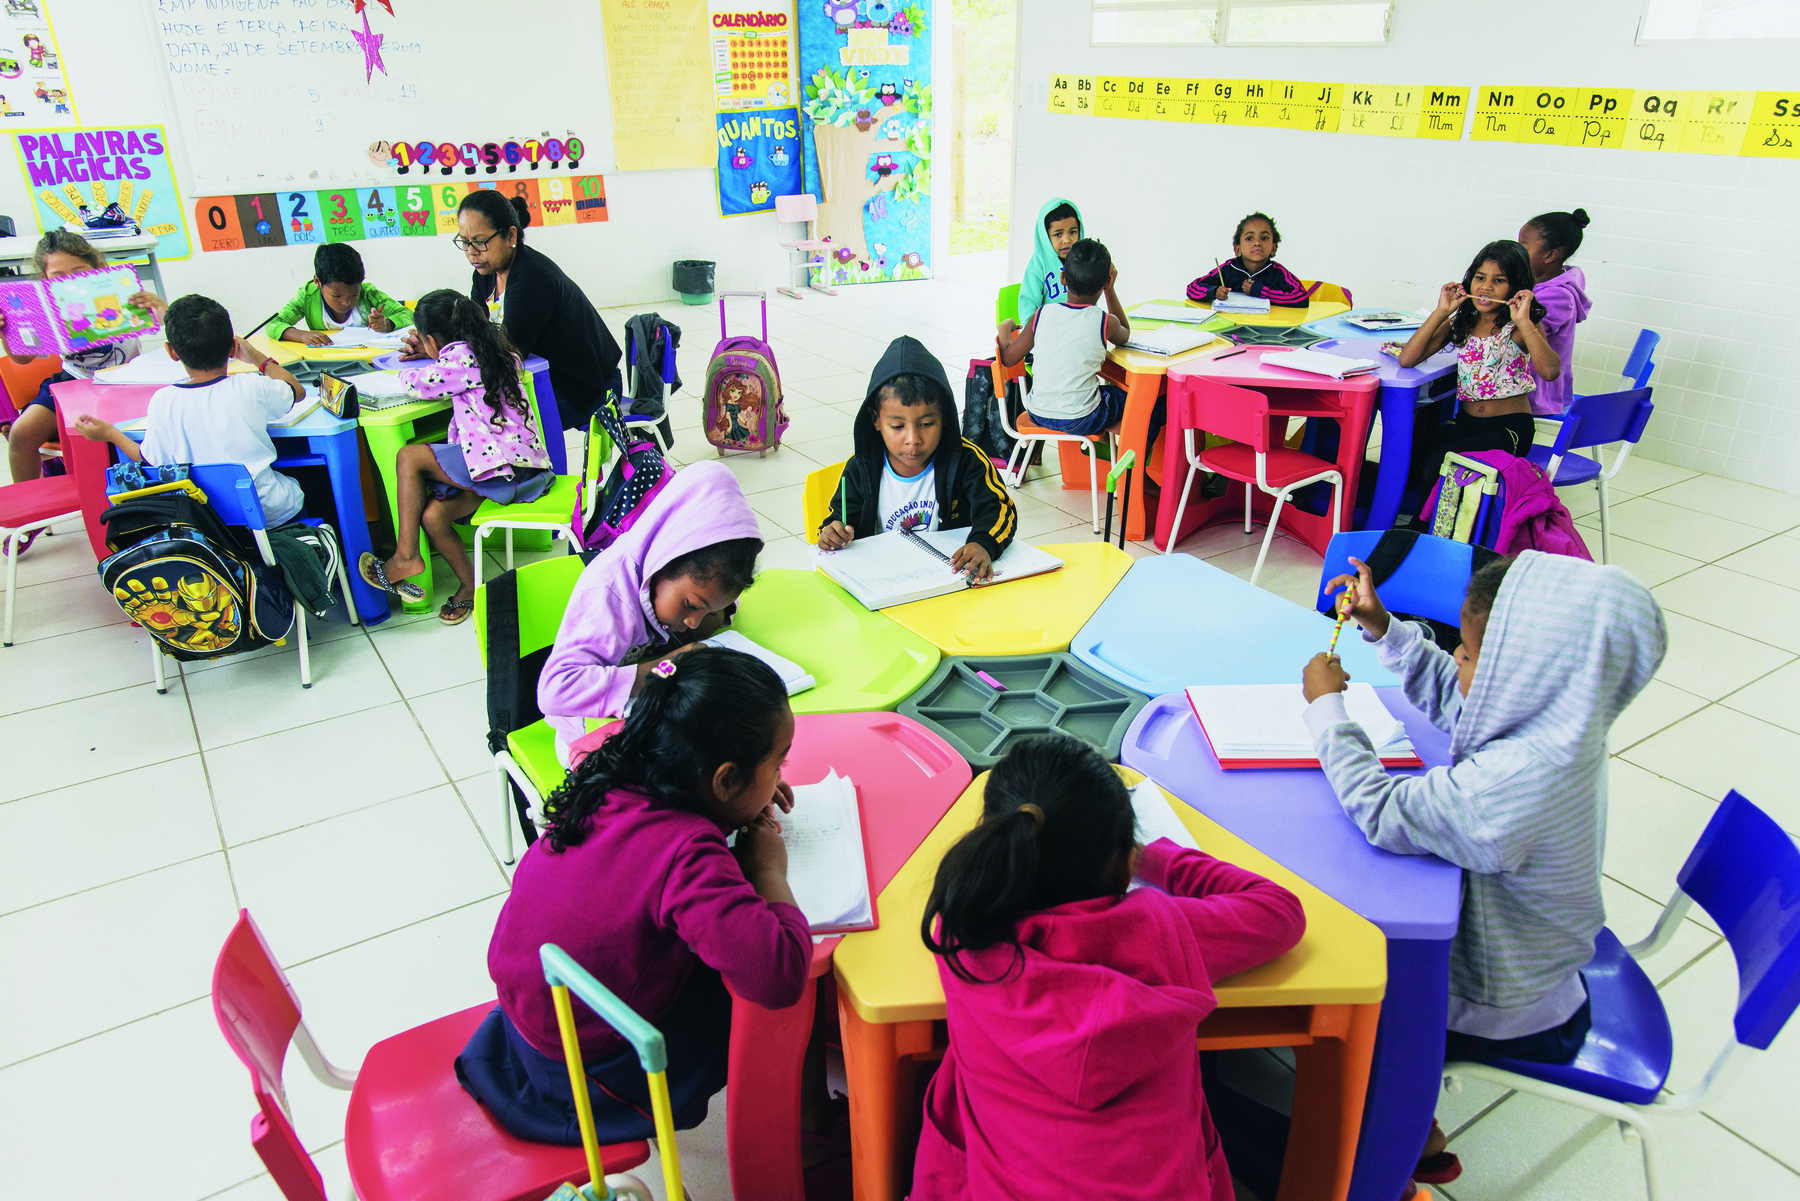 Fotografia. Sala de aula com três mesas coloridas, de forma hexagonal, e crianças sentadas em volta delas. As crianças escrevem em cadernos e, próximo a uma das mesas, à esquerda, uma professora sentada ajuda um grupo de alunos.